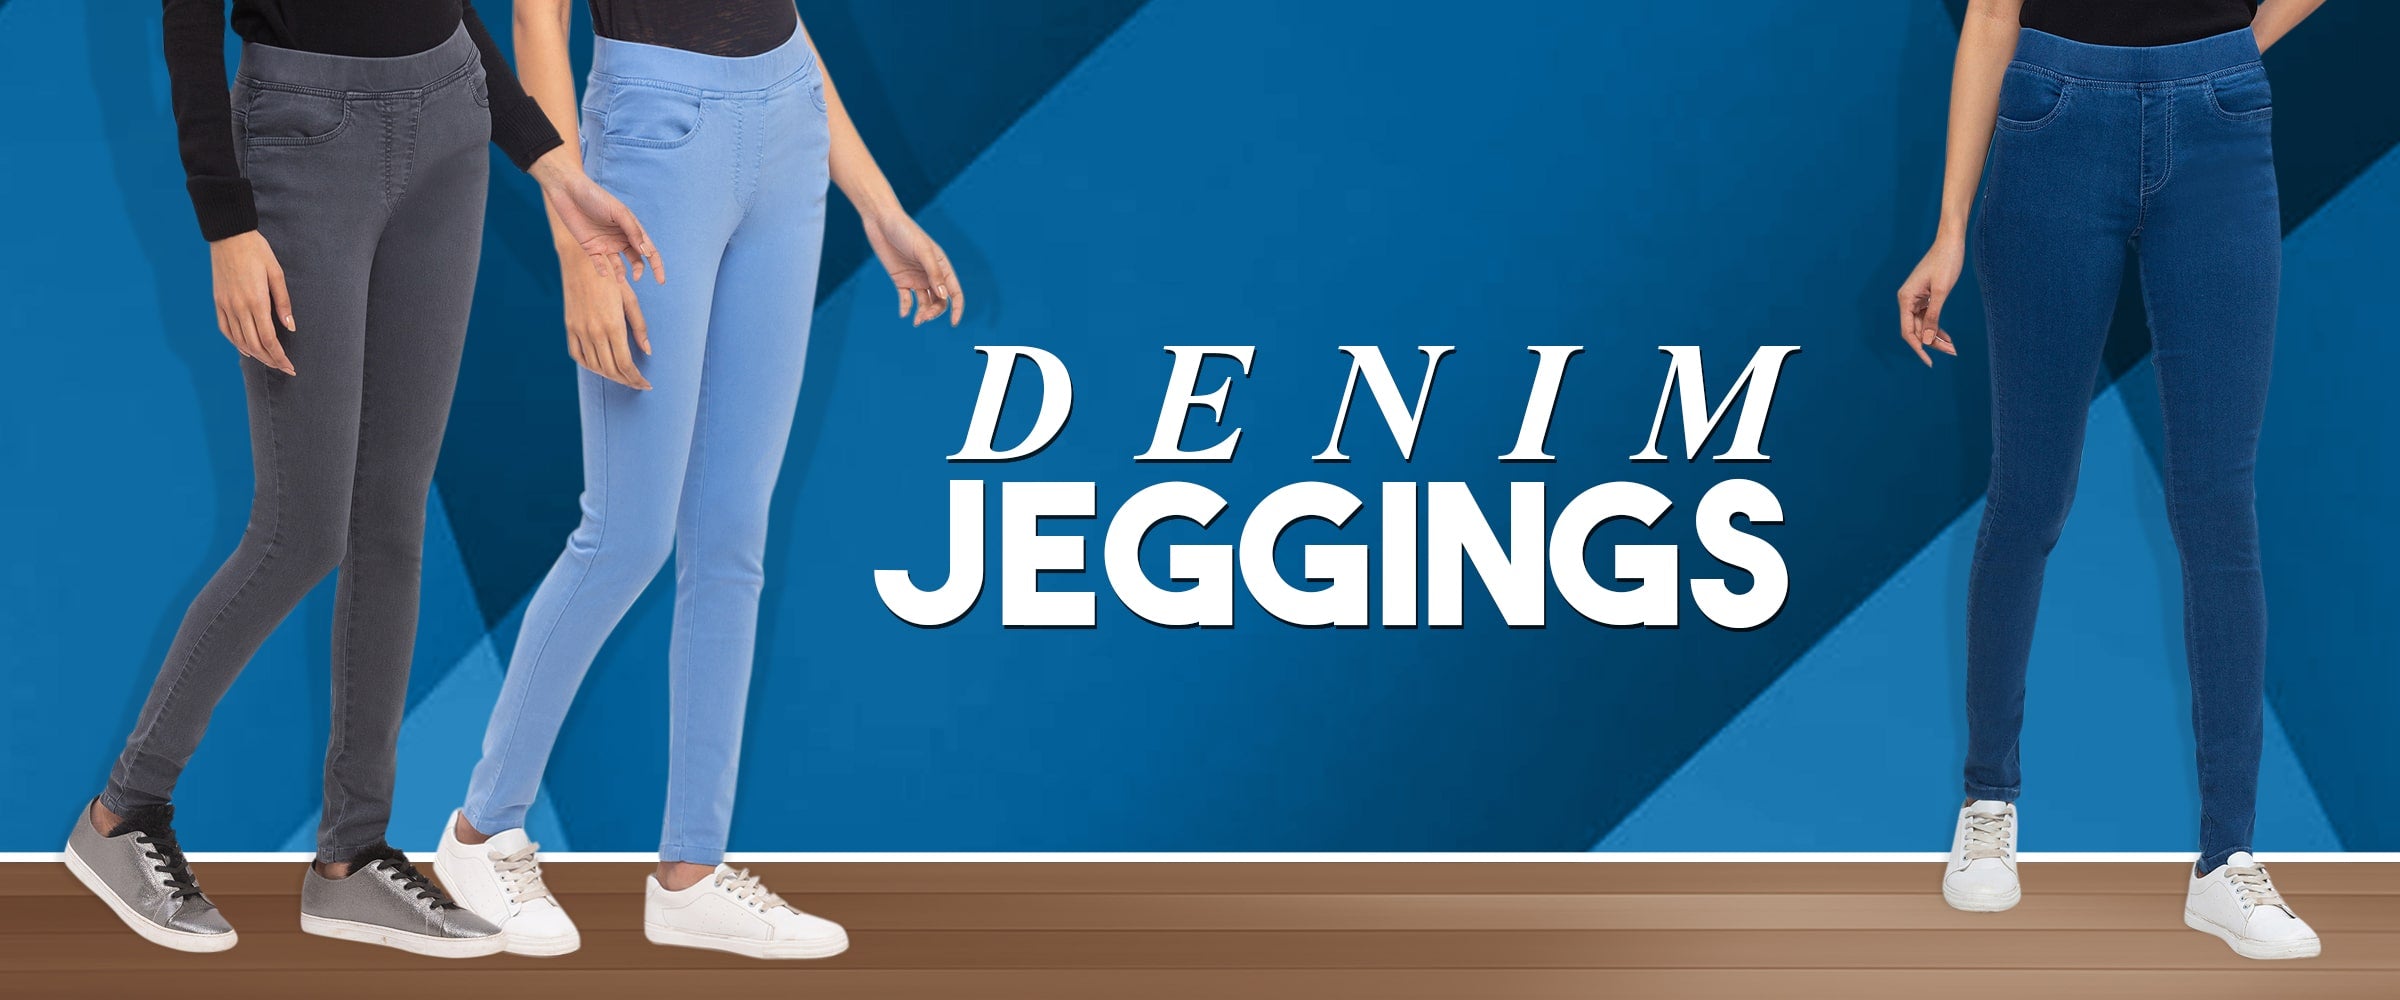 19 Women's Jeans & Jeggings ideas